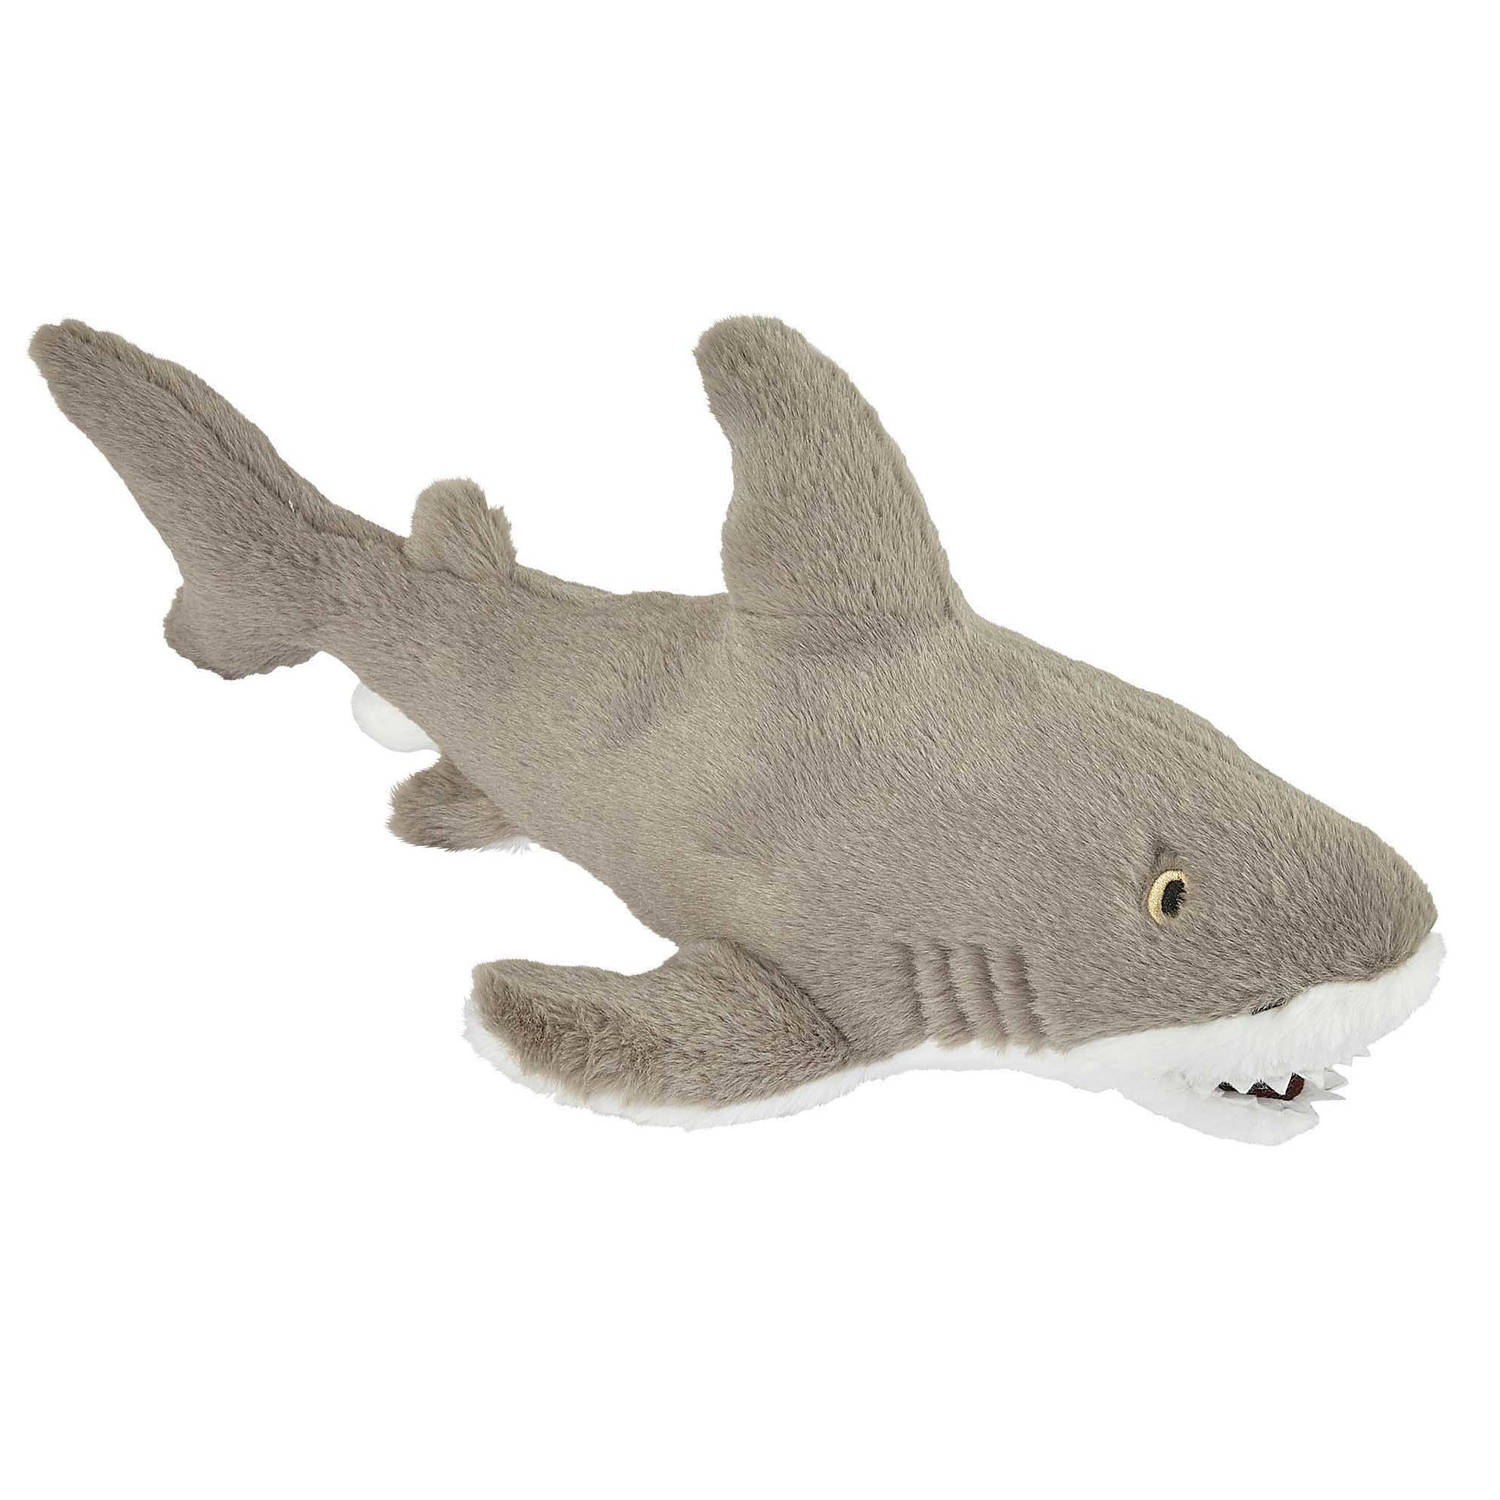 Pluche kleine knuffel zeedieren Witte Haai van 40 cm - Speelgoed beesten /vissen - Leuk als cadeau voor een kind